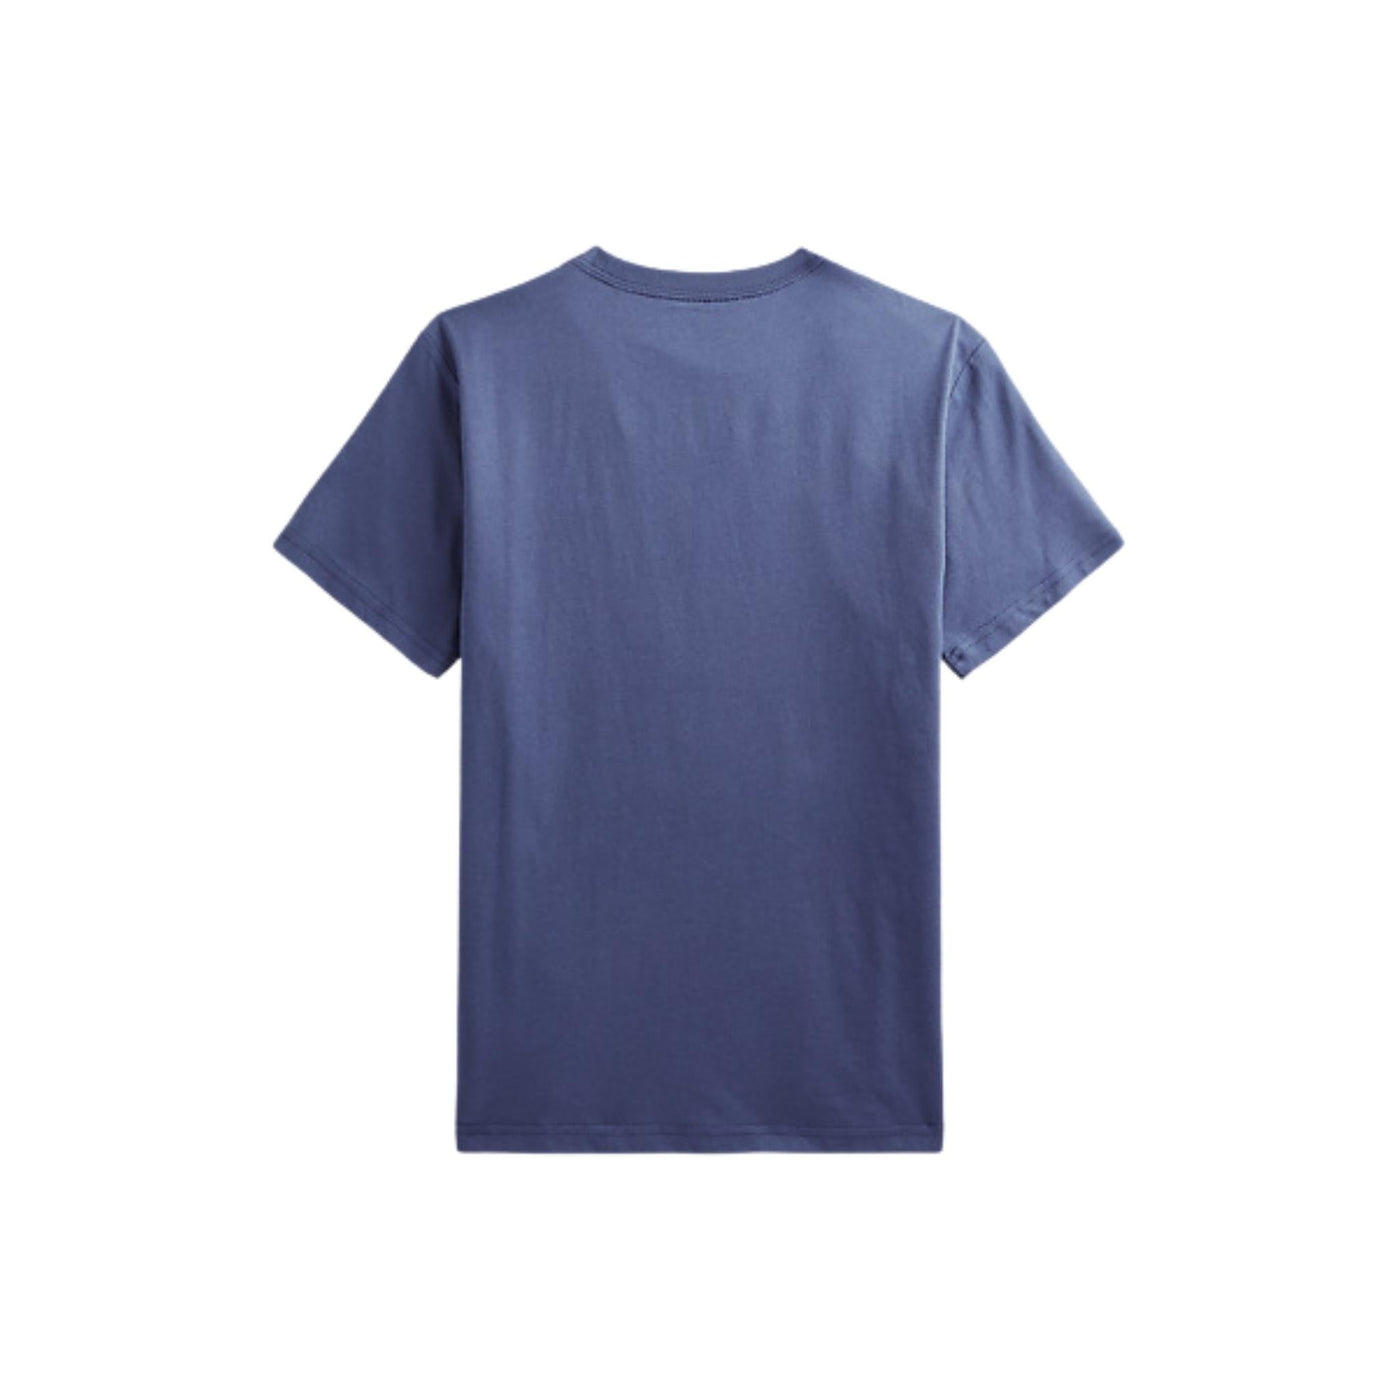 T-shirt bambino blu Polo Ralph Lauren vista retro